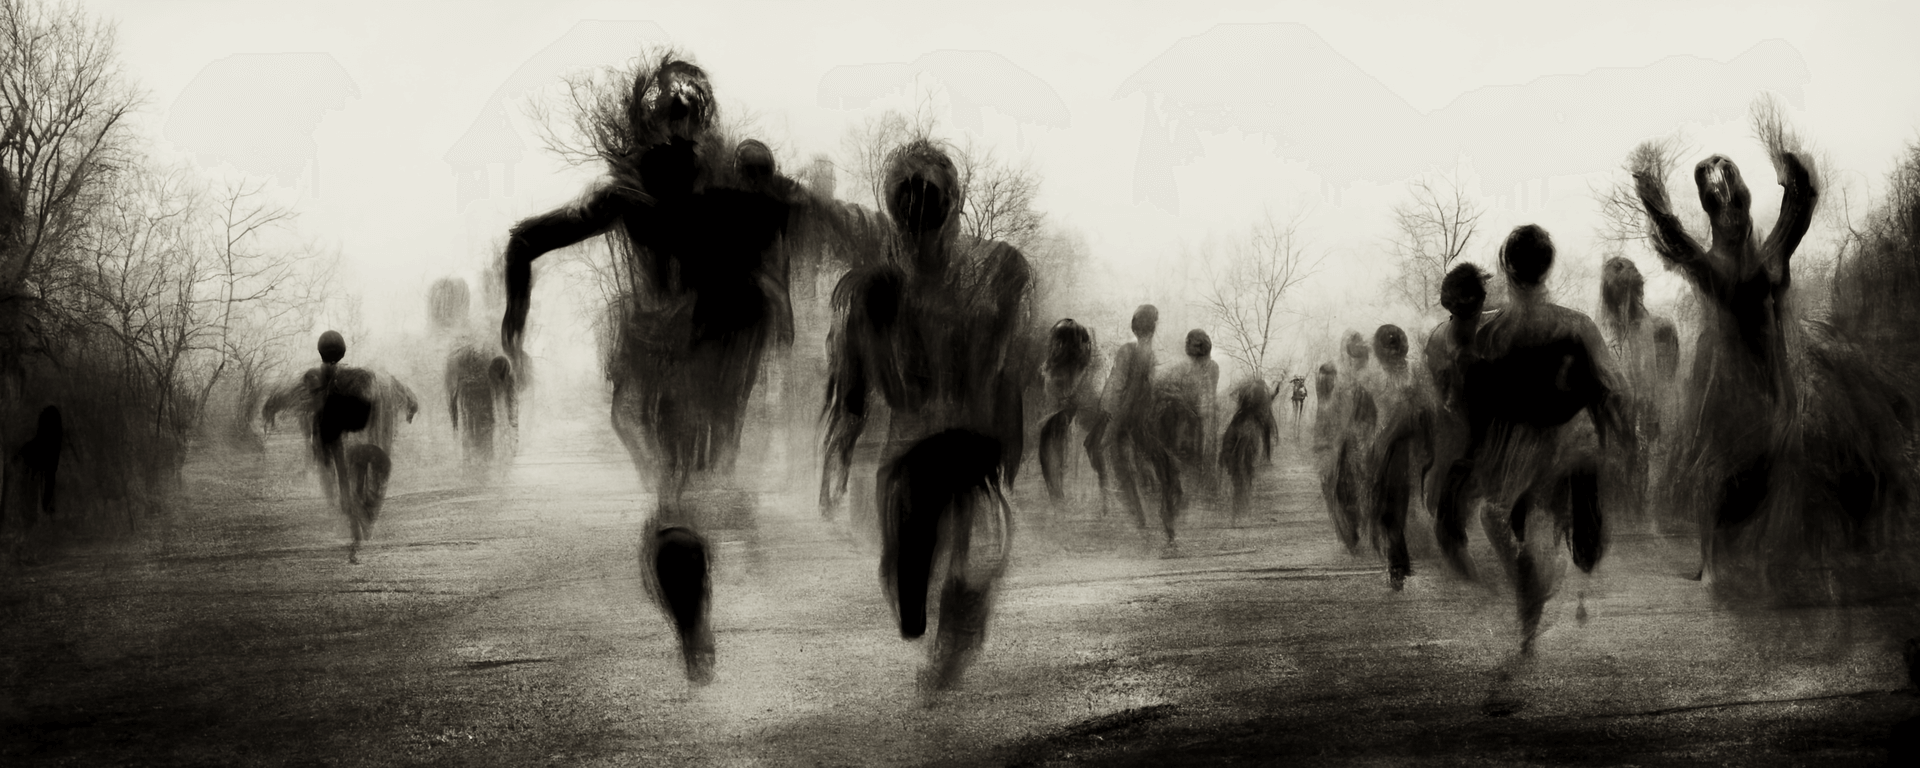 People running